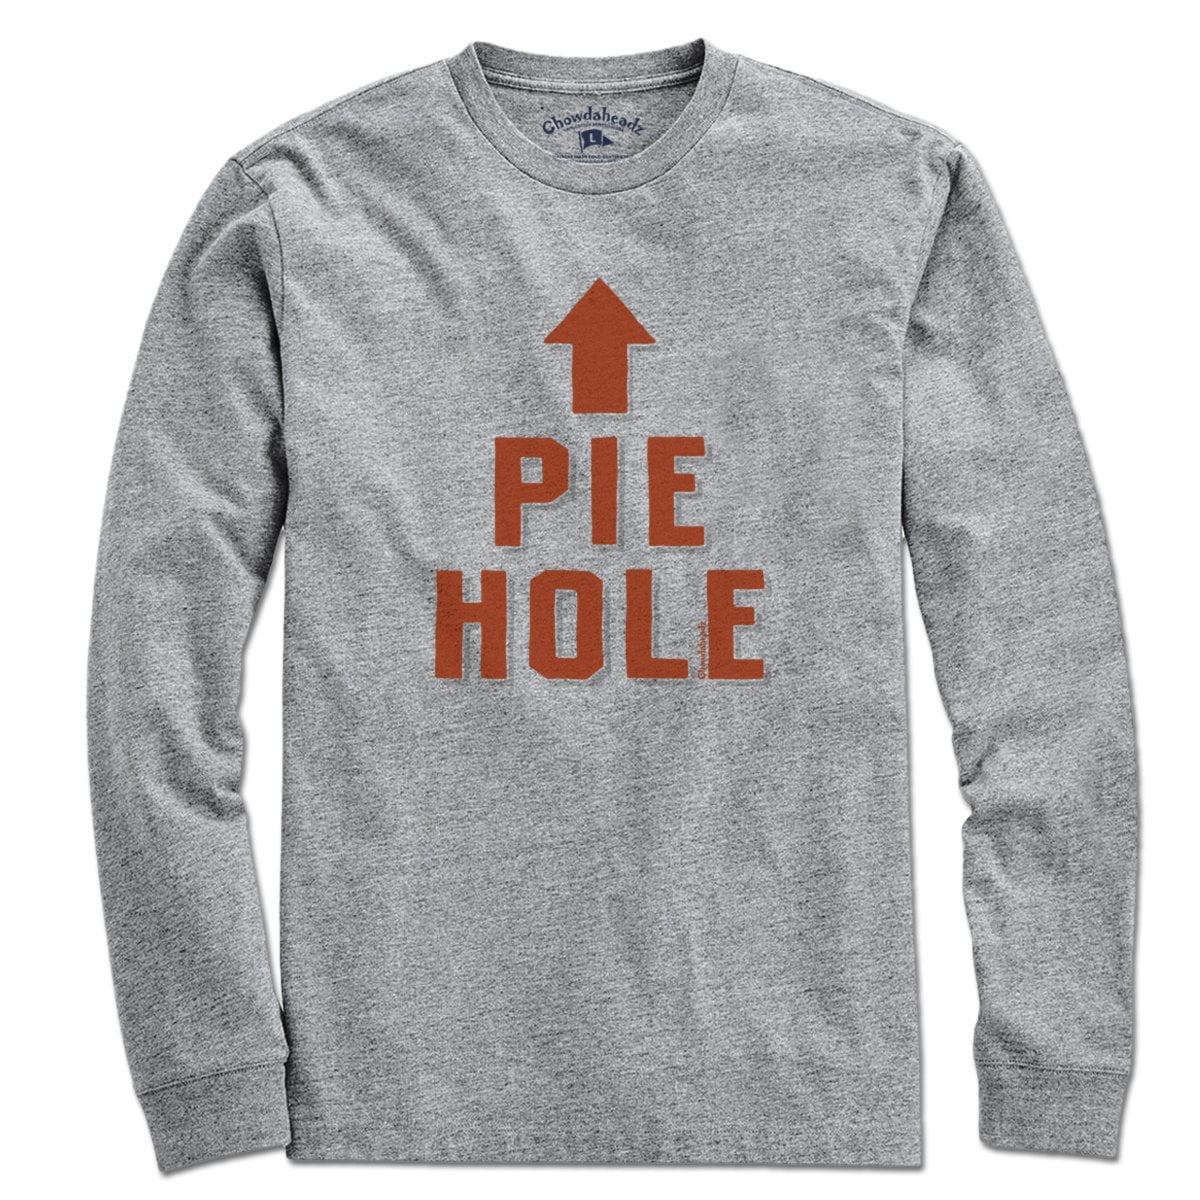 Pie Hole T-Shirt - Chowdaheadz